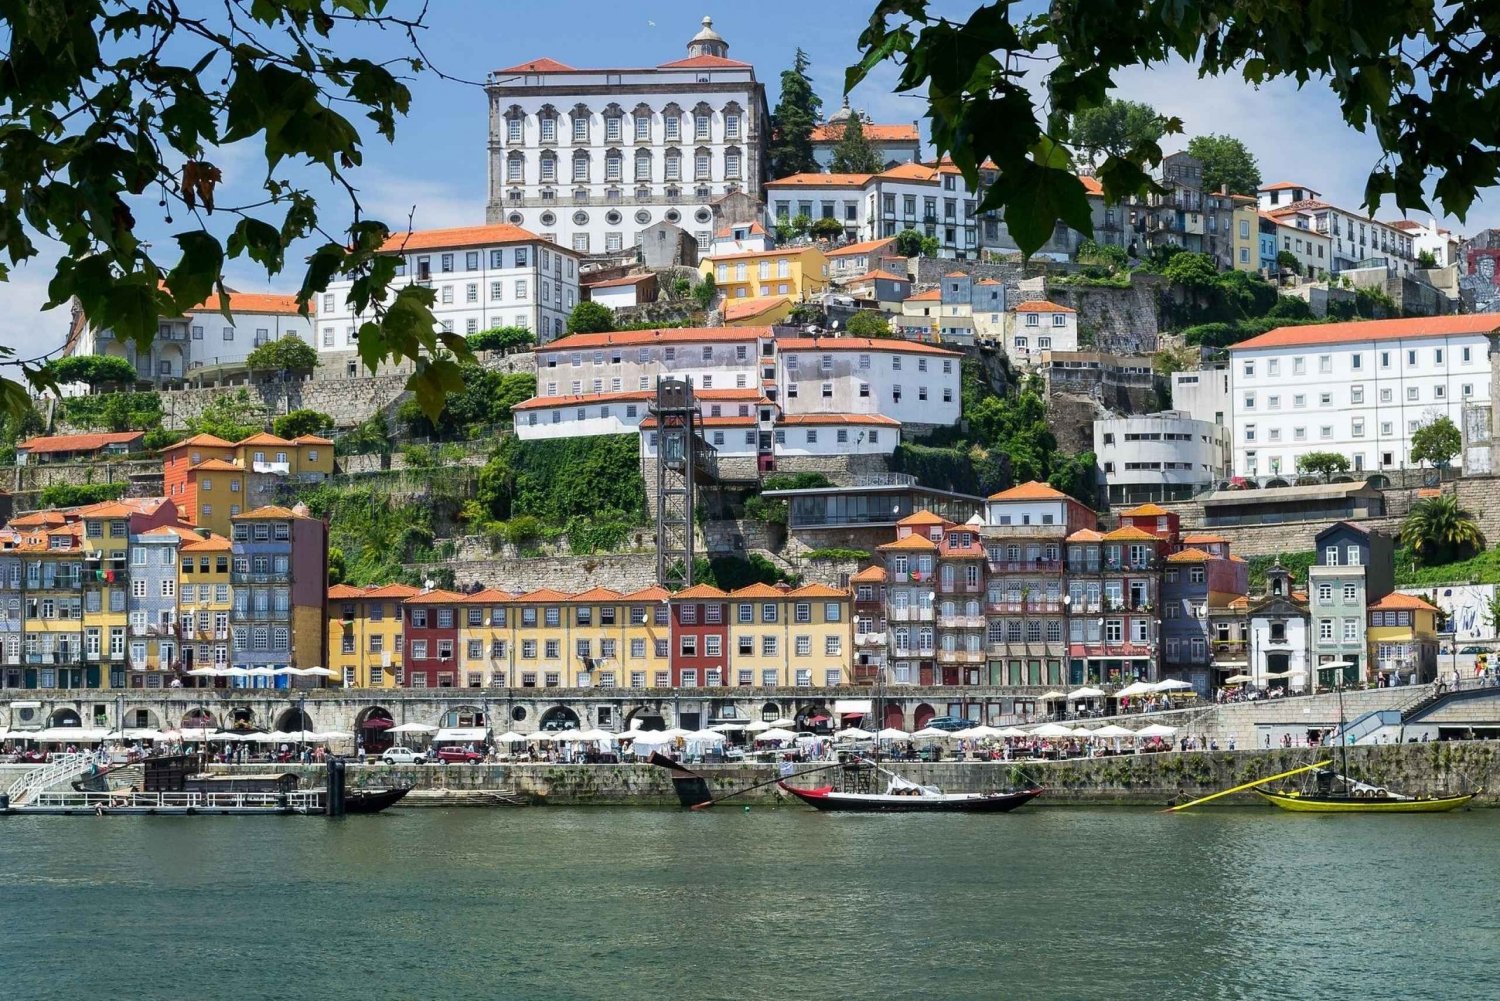 Porto: Zelf rondleiding met audiogids